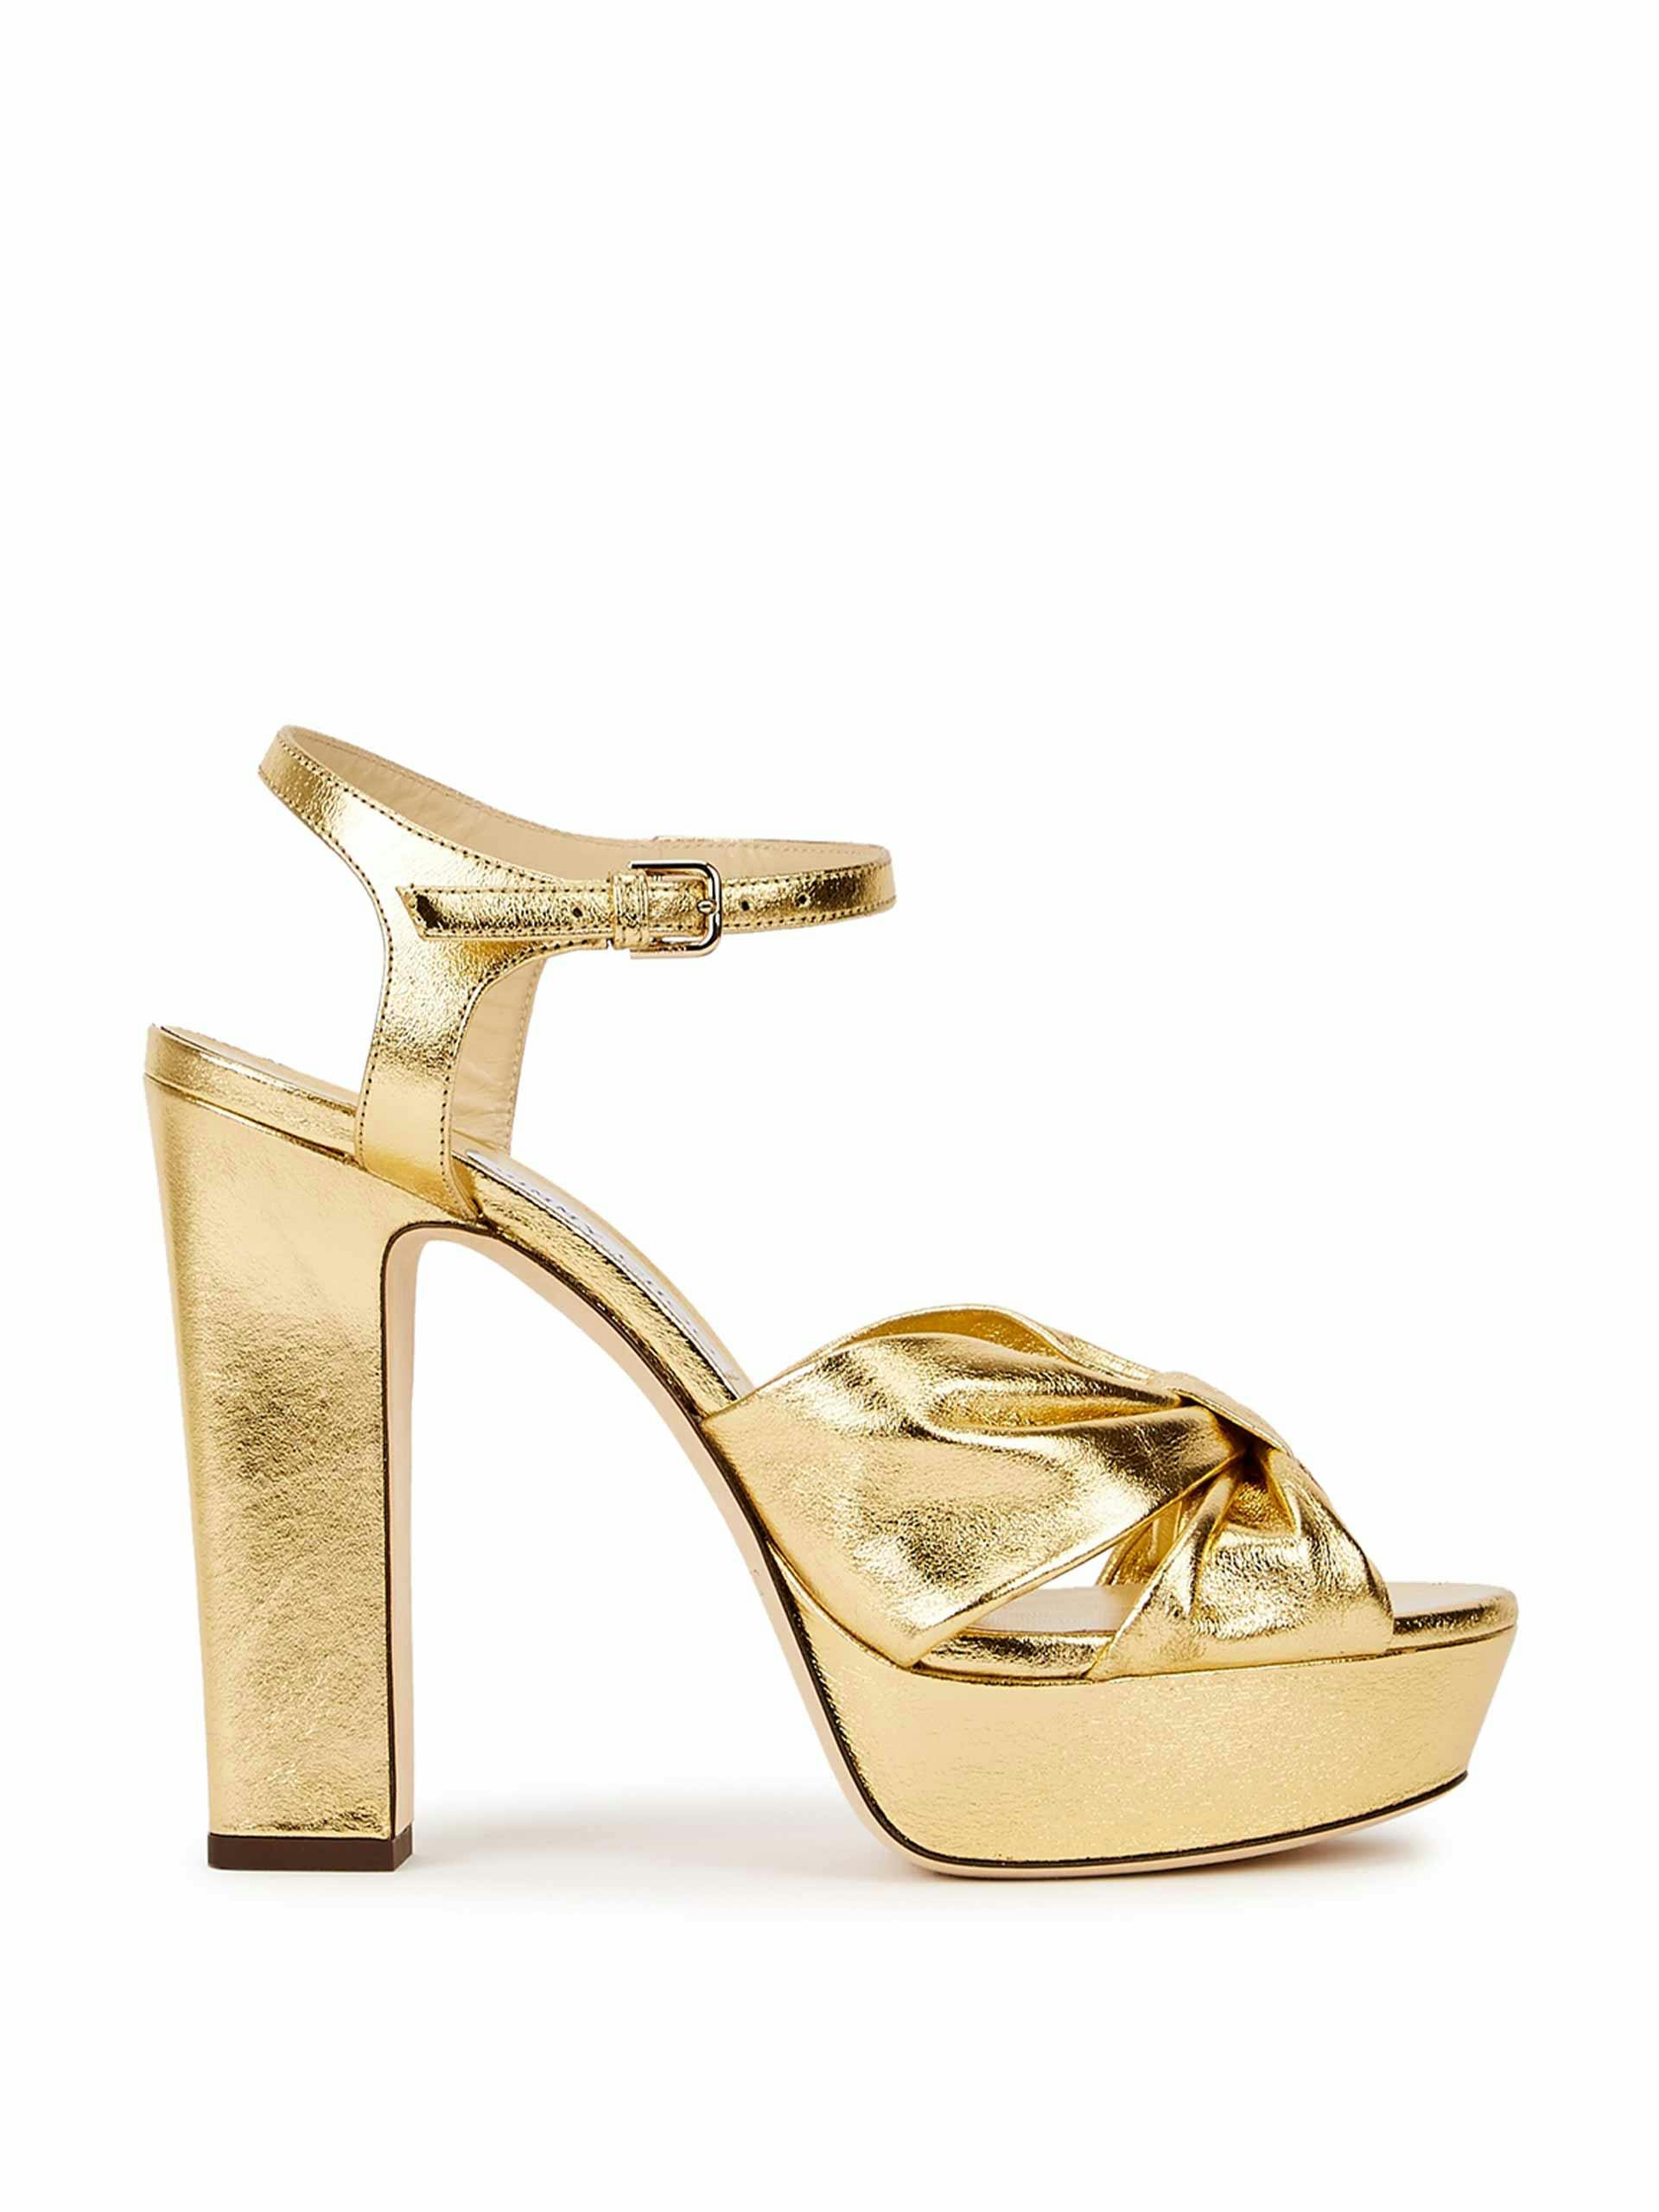 Gold leather platform heels